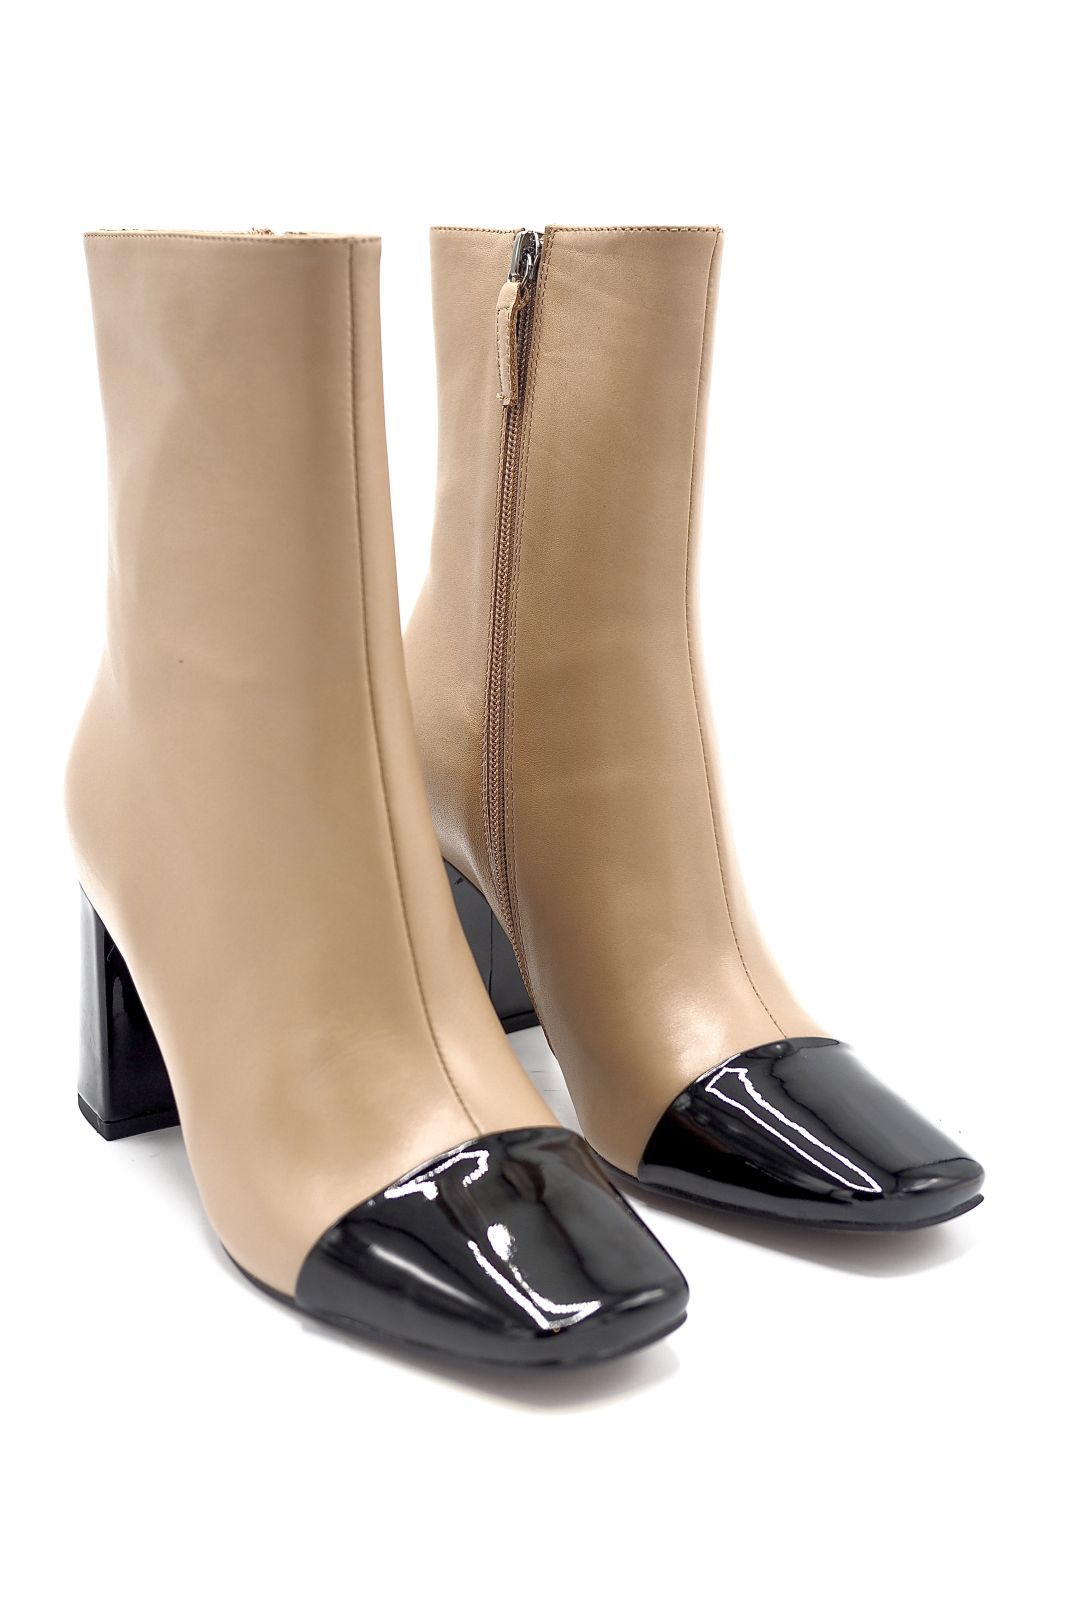 Bibilou boots Beige femmes (Bibi-Boots bout carré style 